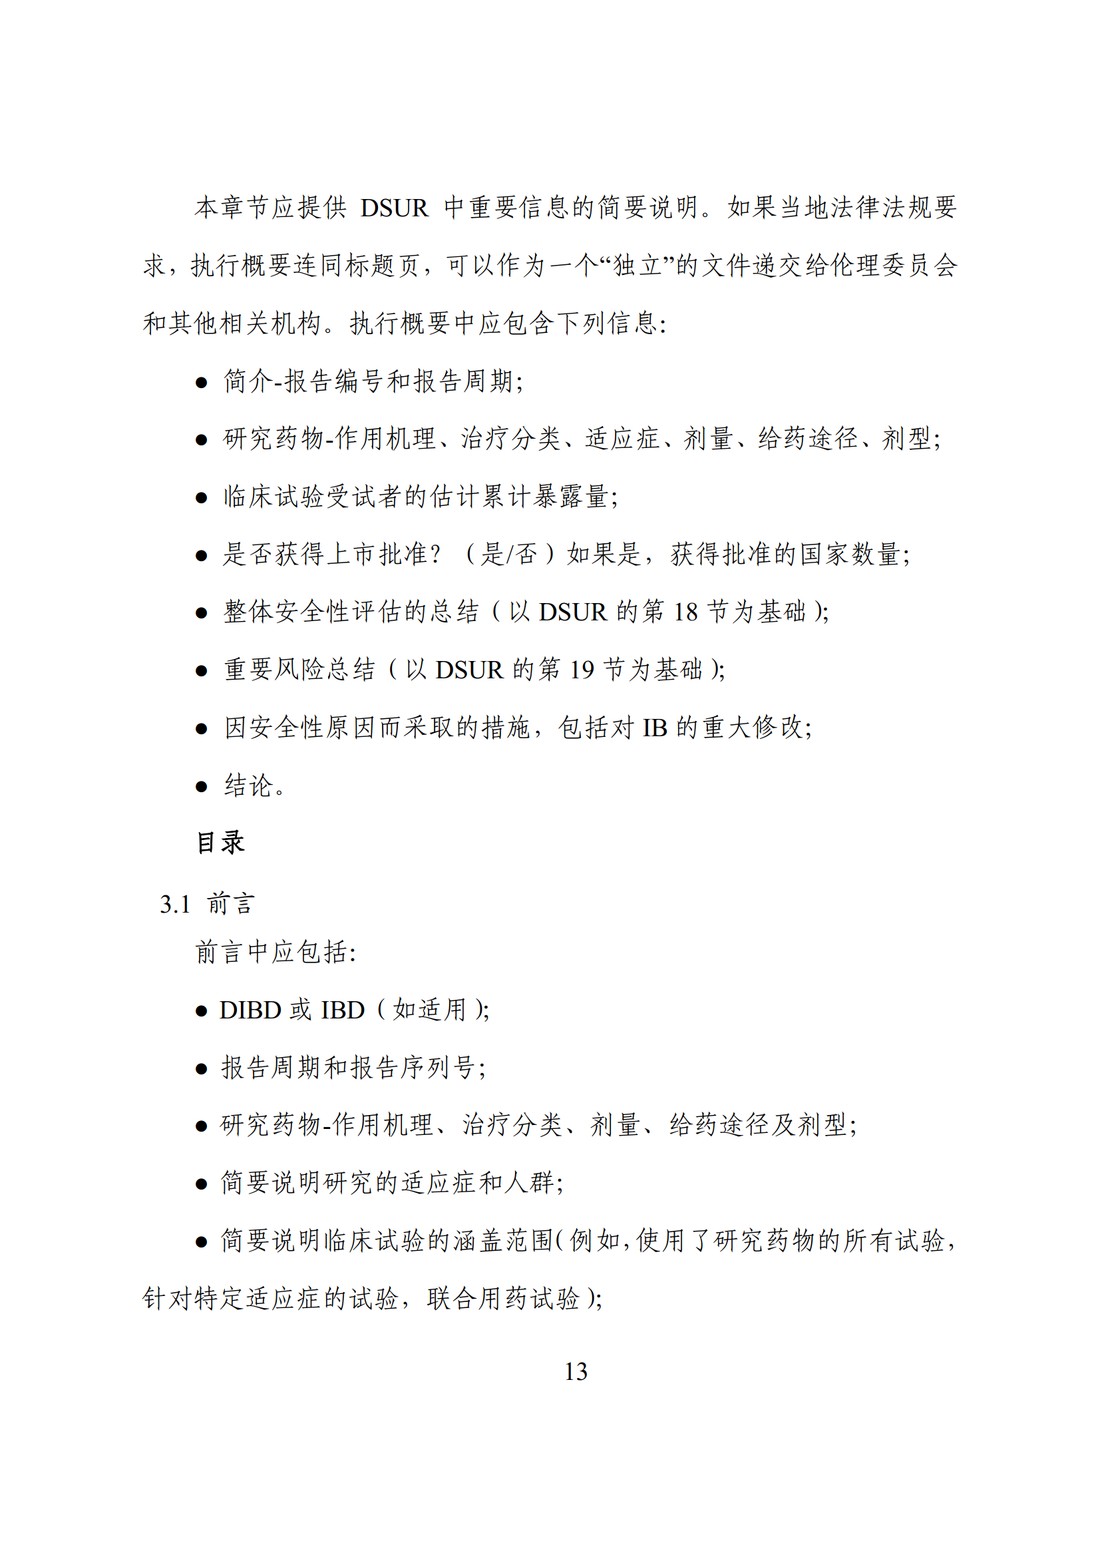 E2F 研发期间安全性更新报告(中文翻译公开征求意见稿)_18.jpg